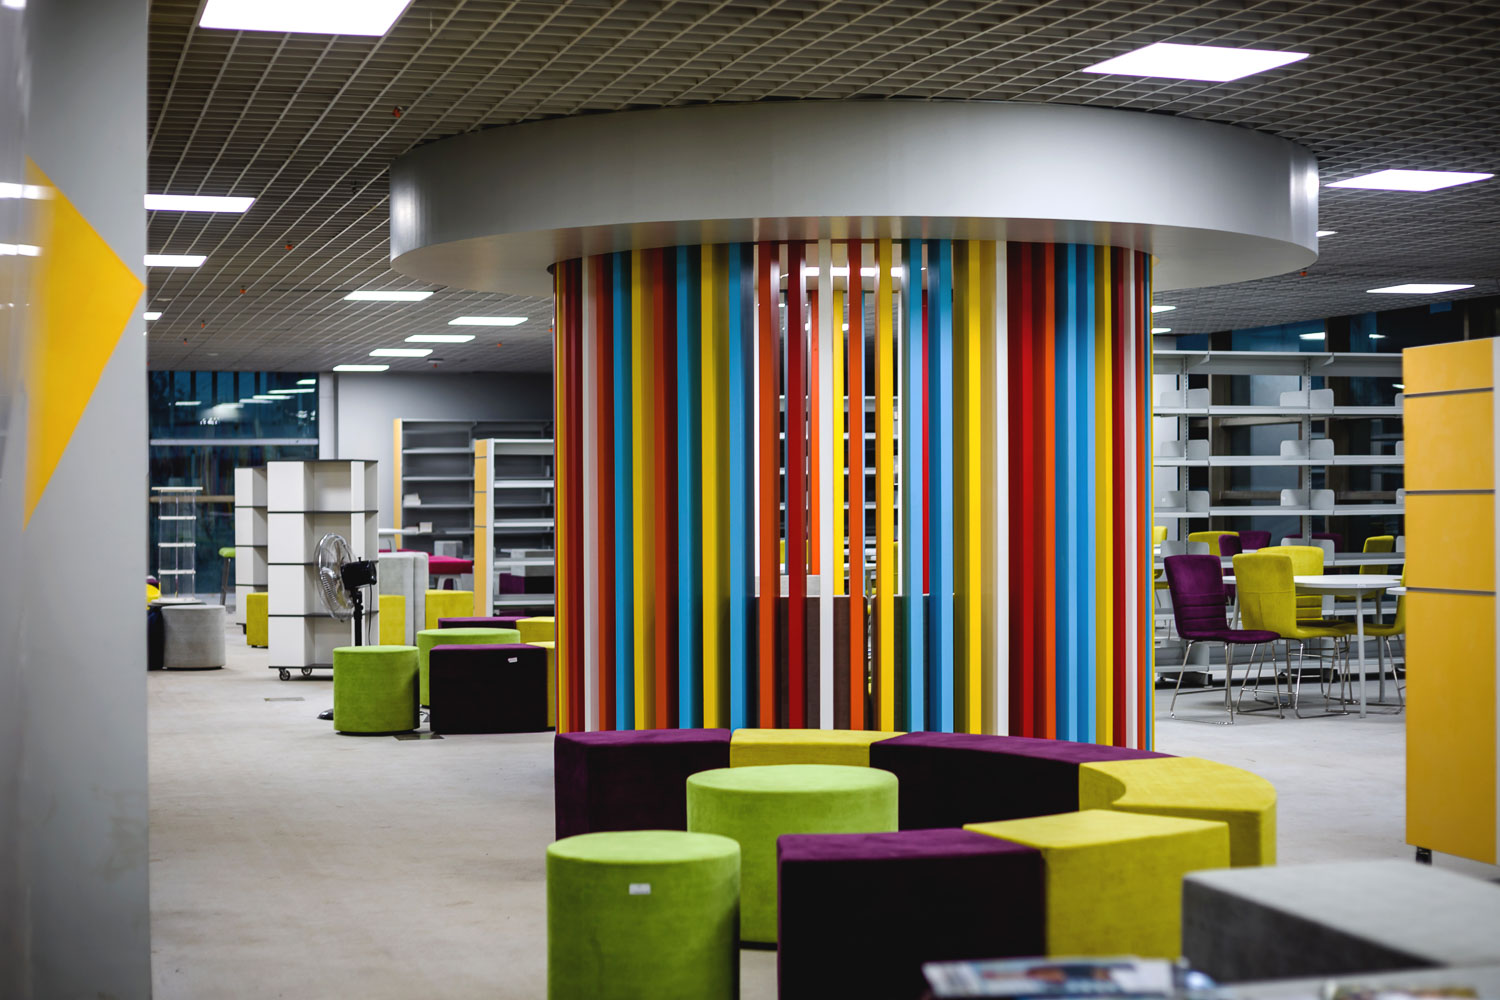 KIIT University Library